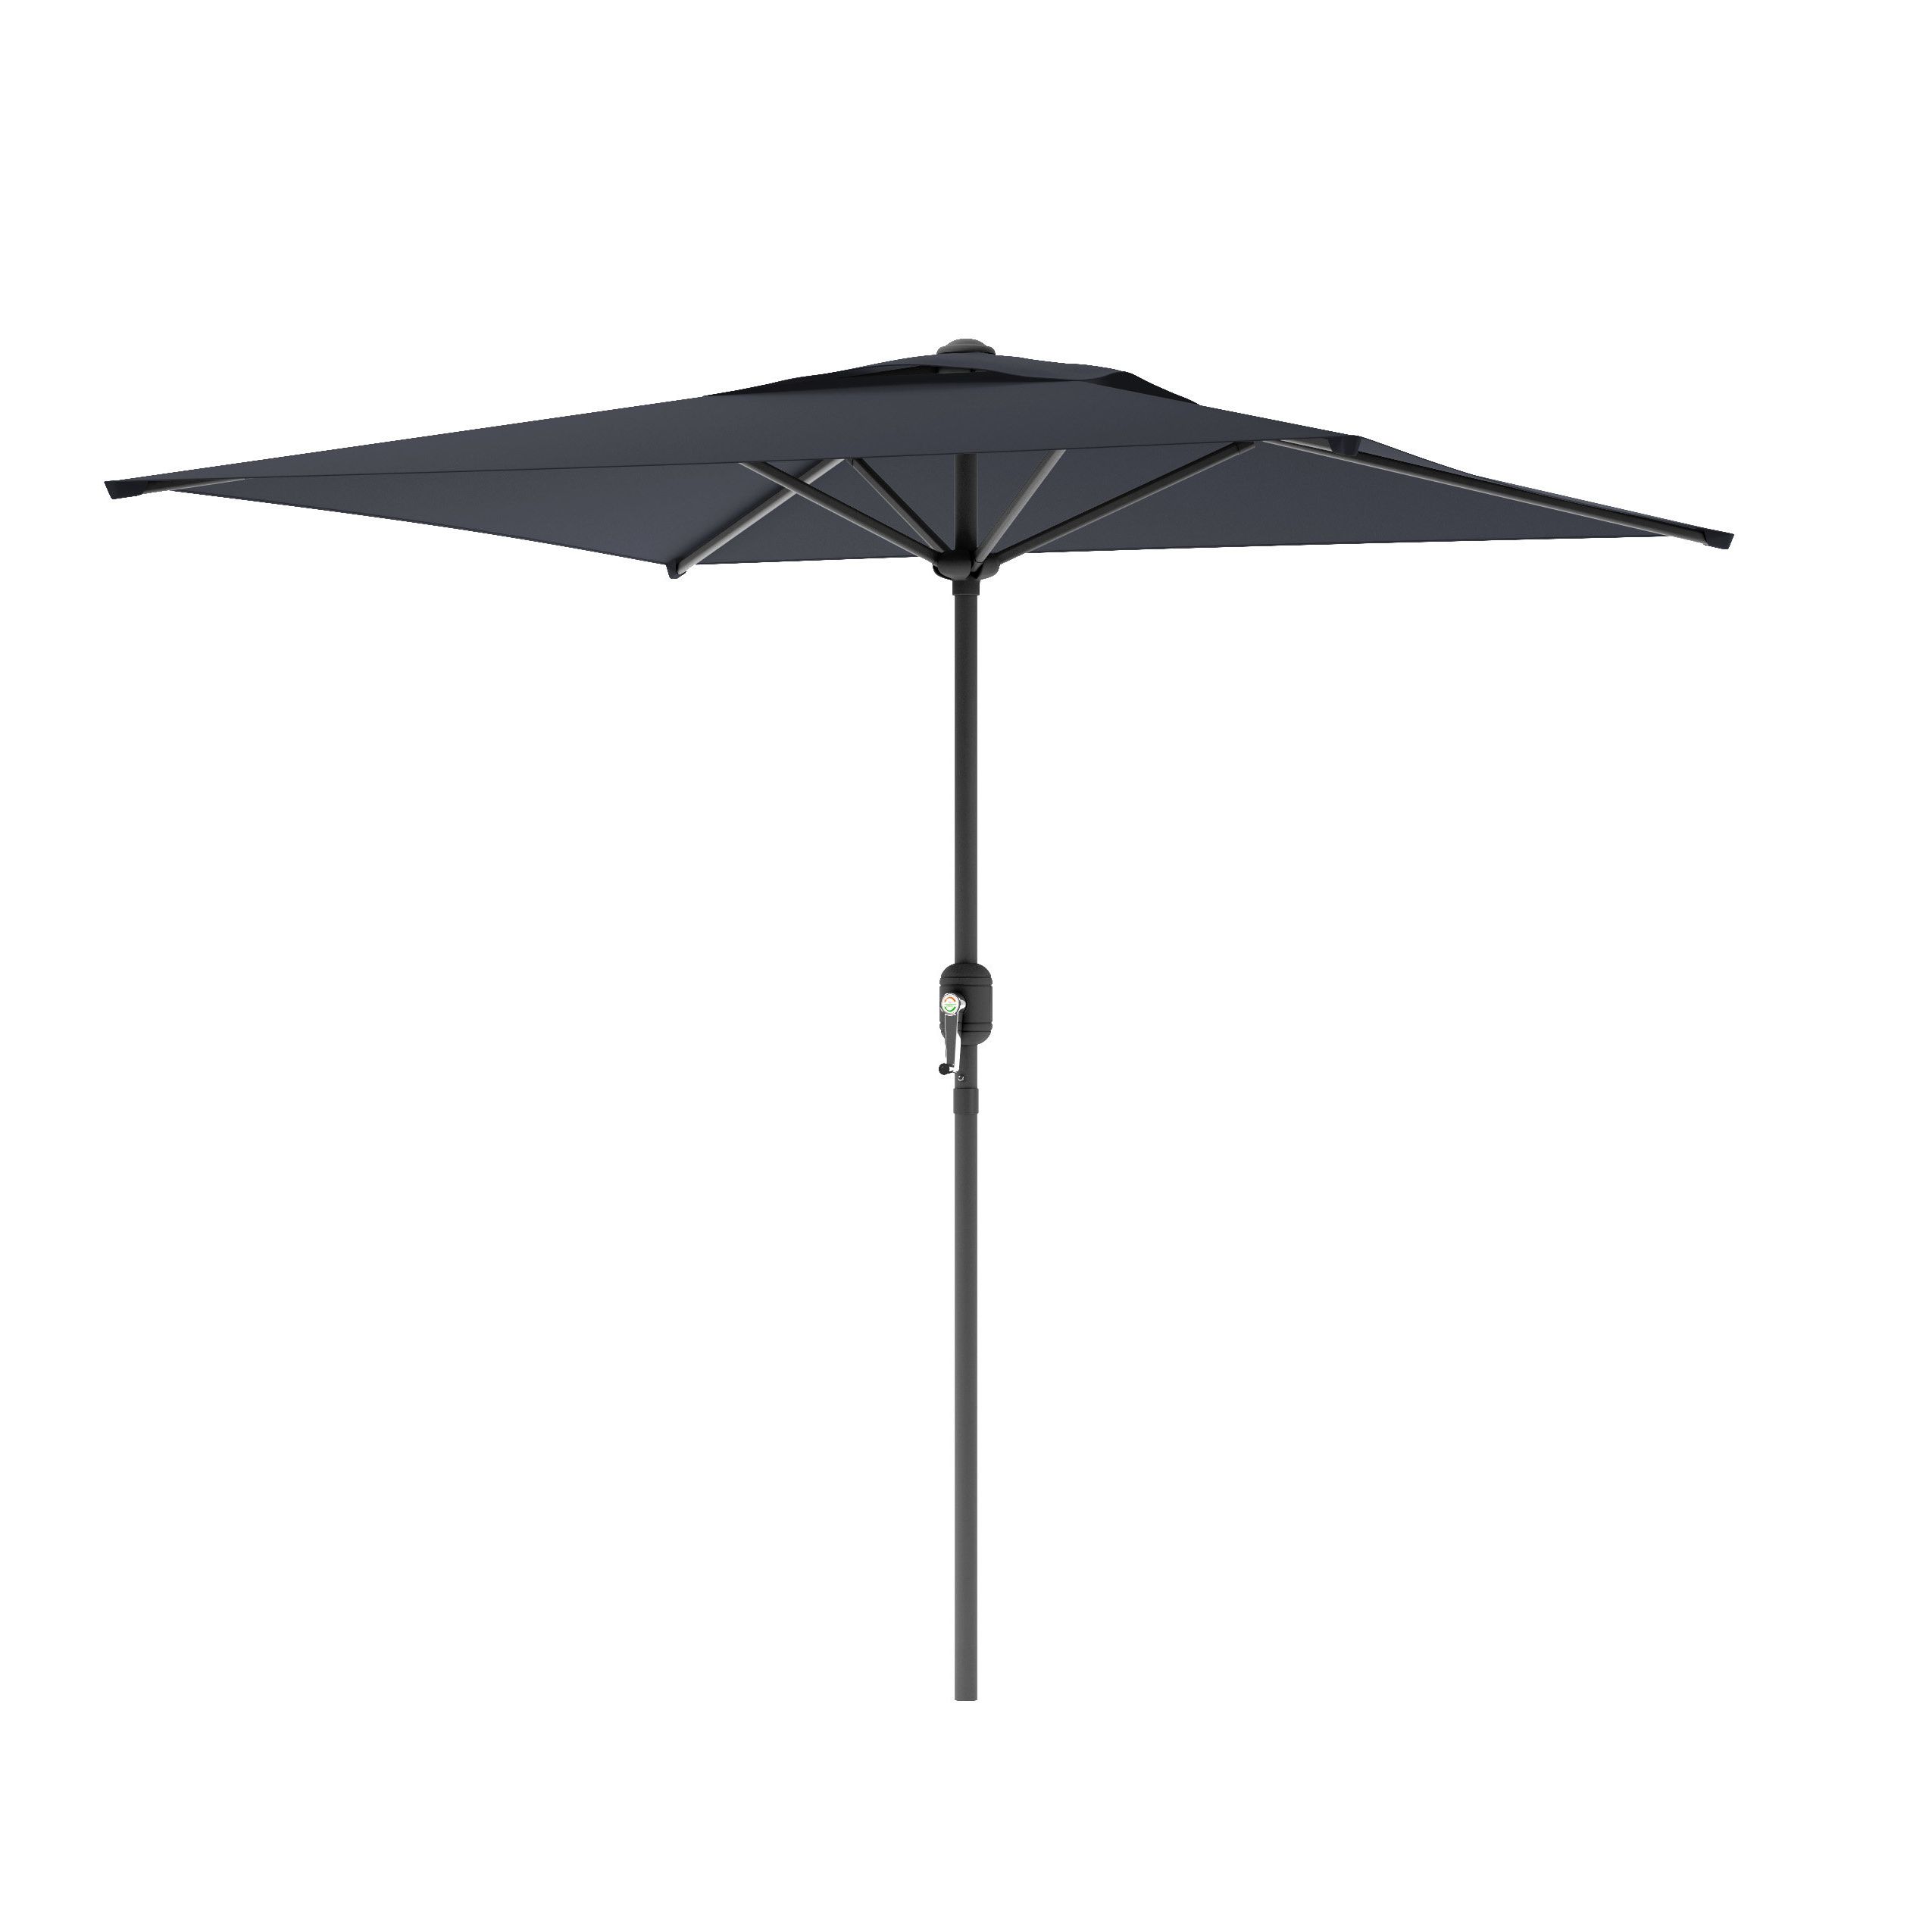 Crowborough 9' Square Market Umbrella Pertaining To 2020 Crowborough Market Umbrellas (View 1 of 20)